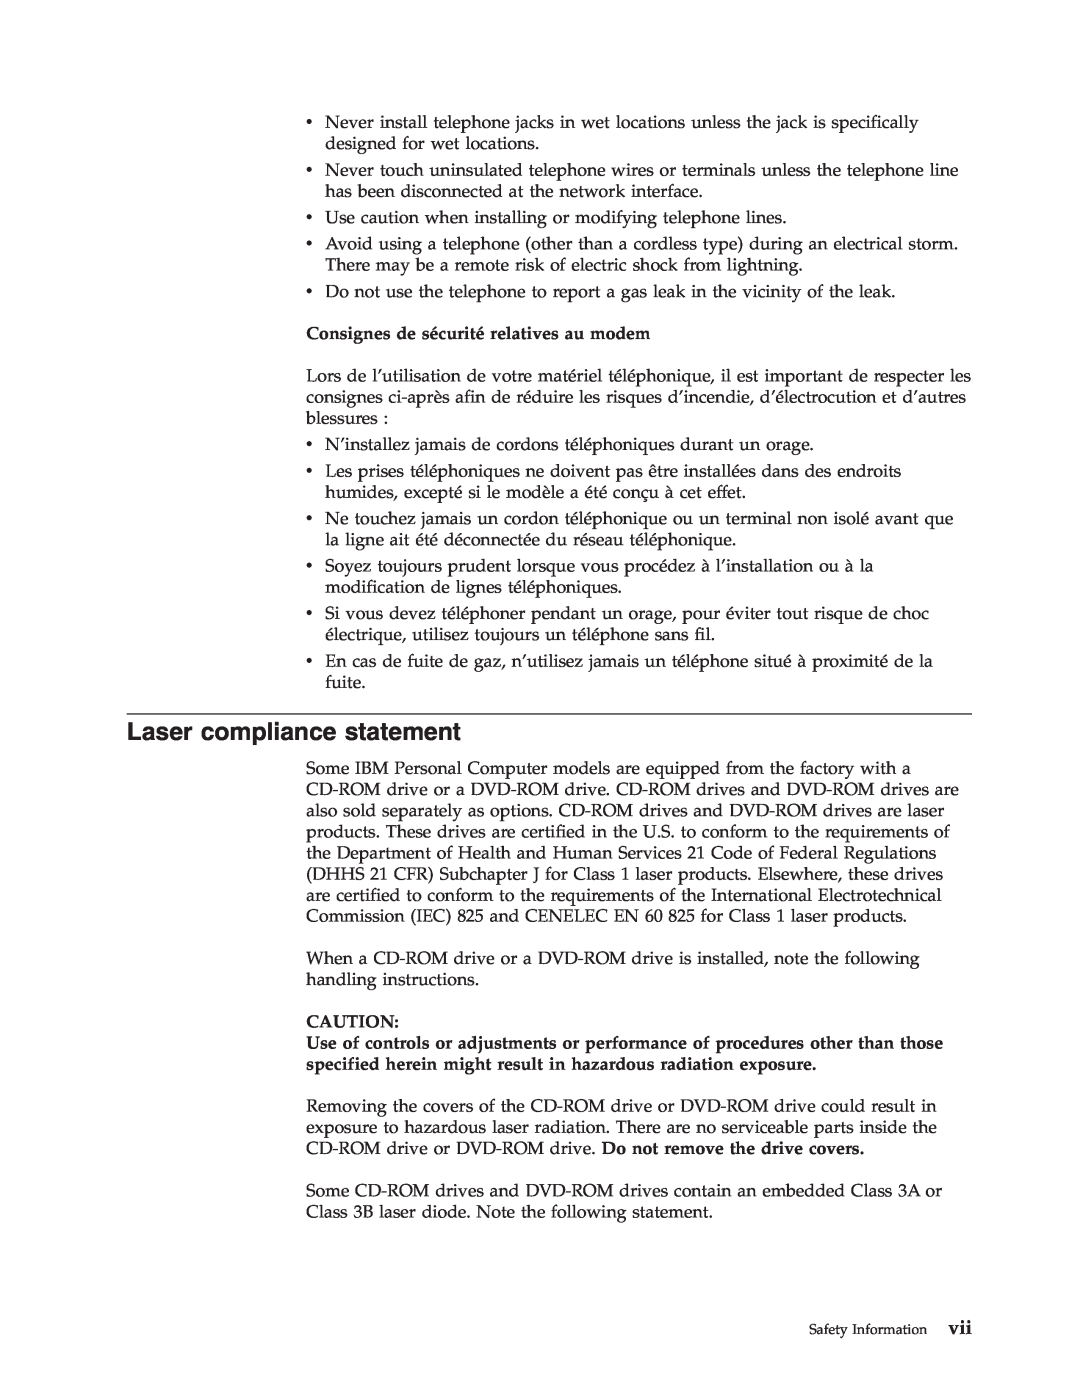 IBM 6826, 8319, 8317, 8318 manual Laser compliance statement, Consignes de sécurité relatives au modem 